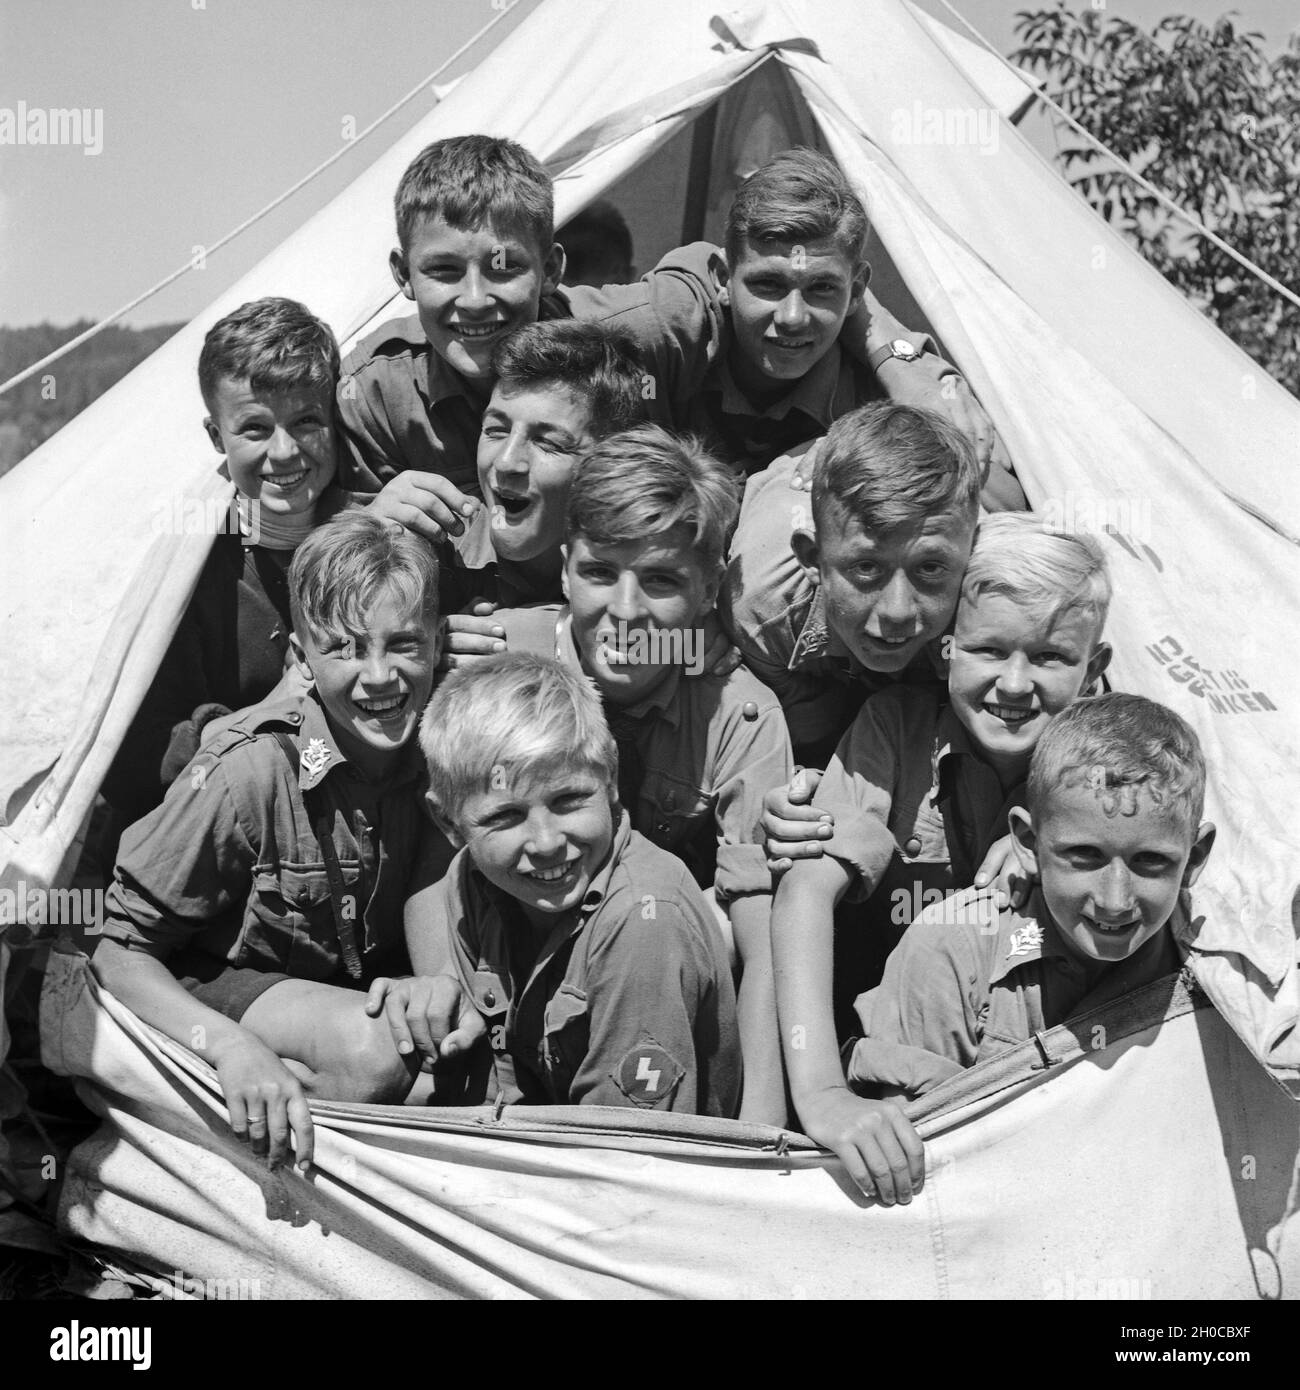 Die Belegung eines Gruppenzeltes im Hitlerjugend Lager besteht aus zehn Hitlerjungen, Österreich 1930er Jahre. The occupnacy of a tent at the Hitler youth camp consists of ten boys, Austria 1930s. Stock Photo